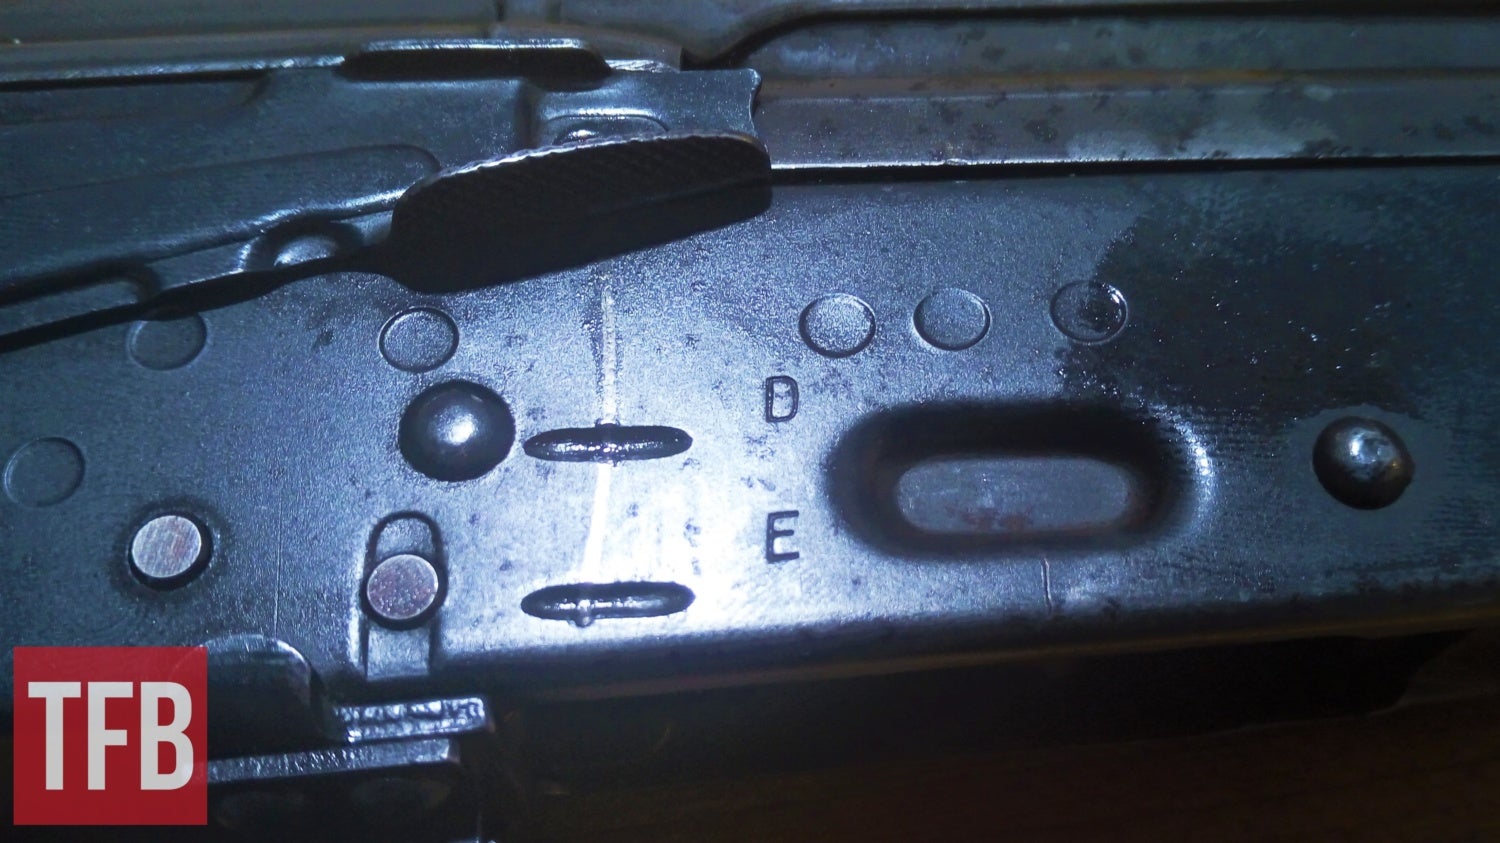 Selector markings of 7.62x39 East German AKs